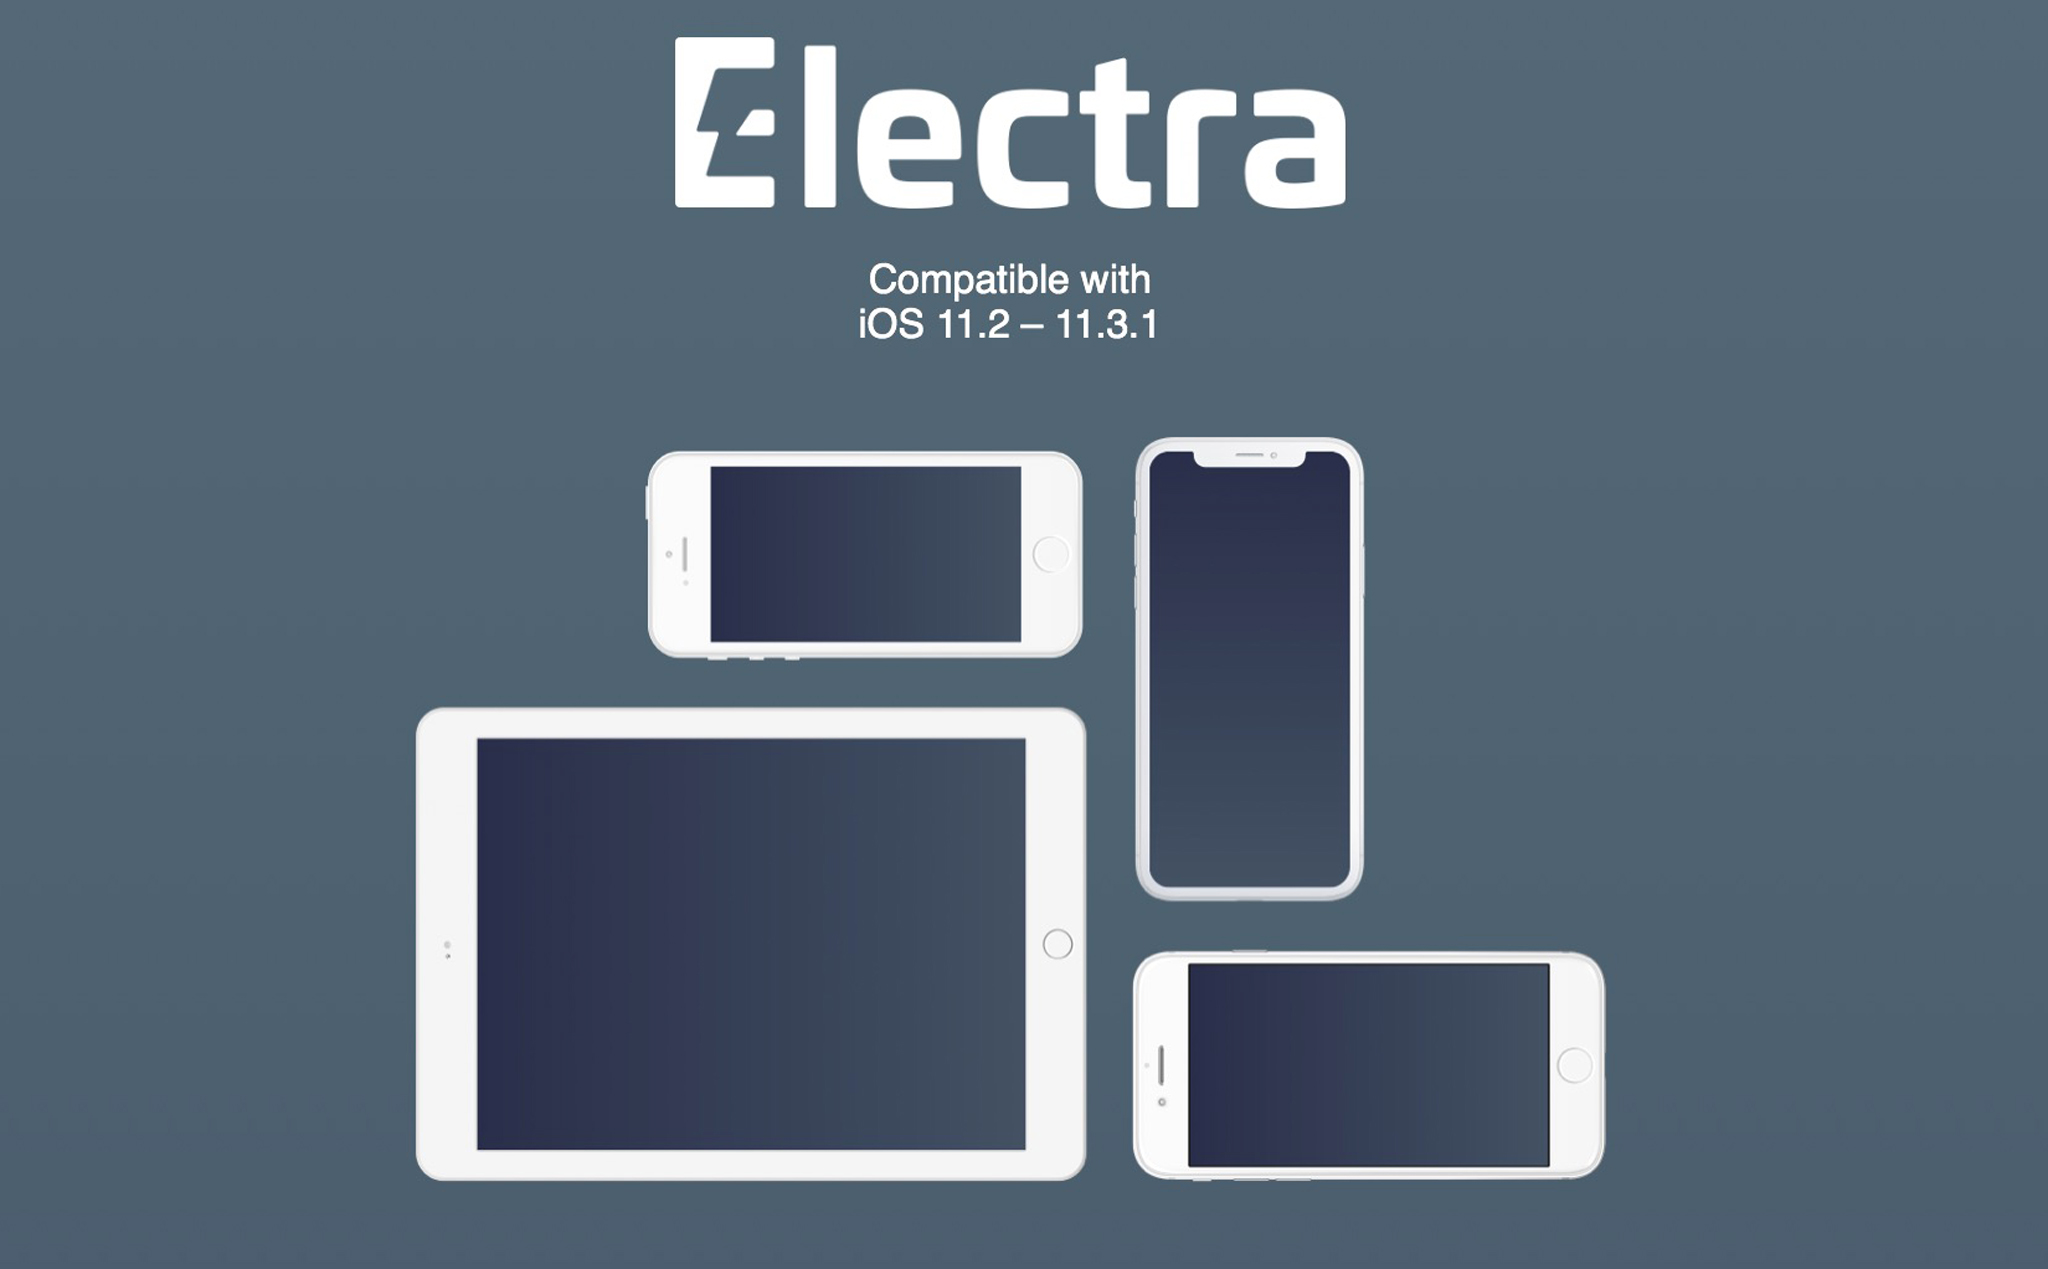 Hướng dẫn Jailbreak iOS từ 11.2 đến 11.3.1 bằng công cụ Electra mới được phát hành